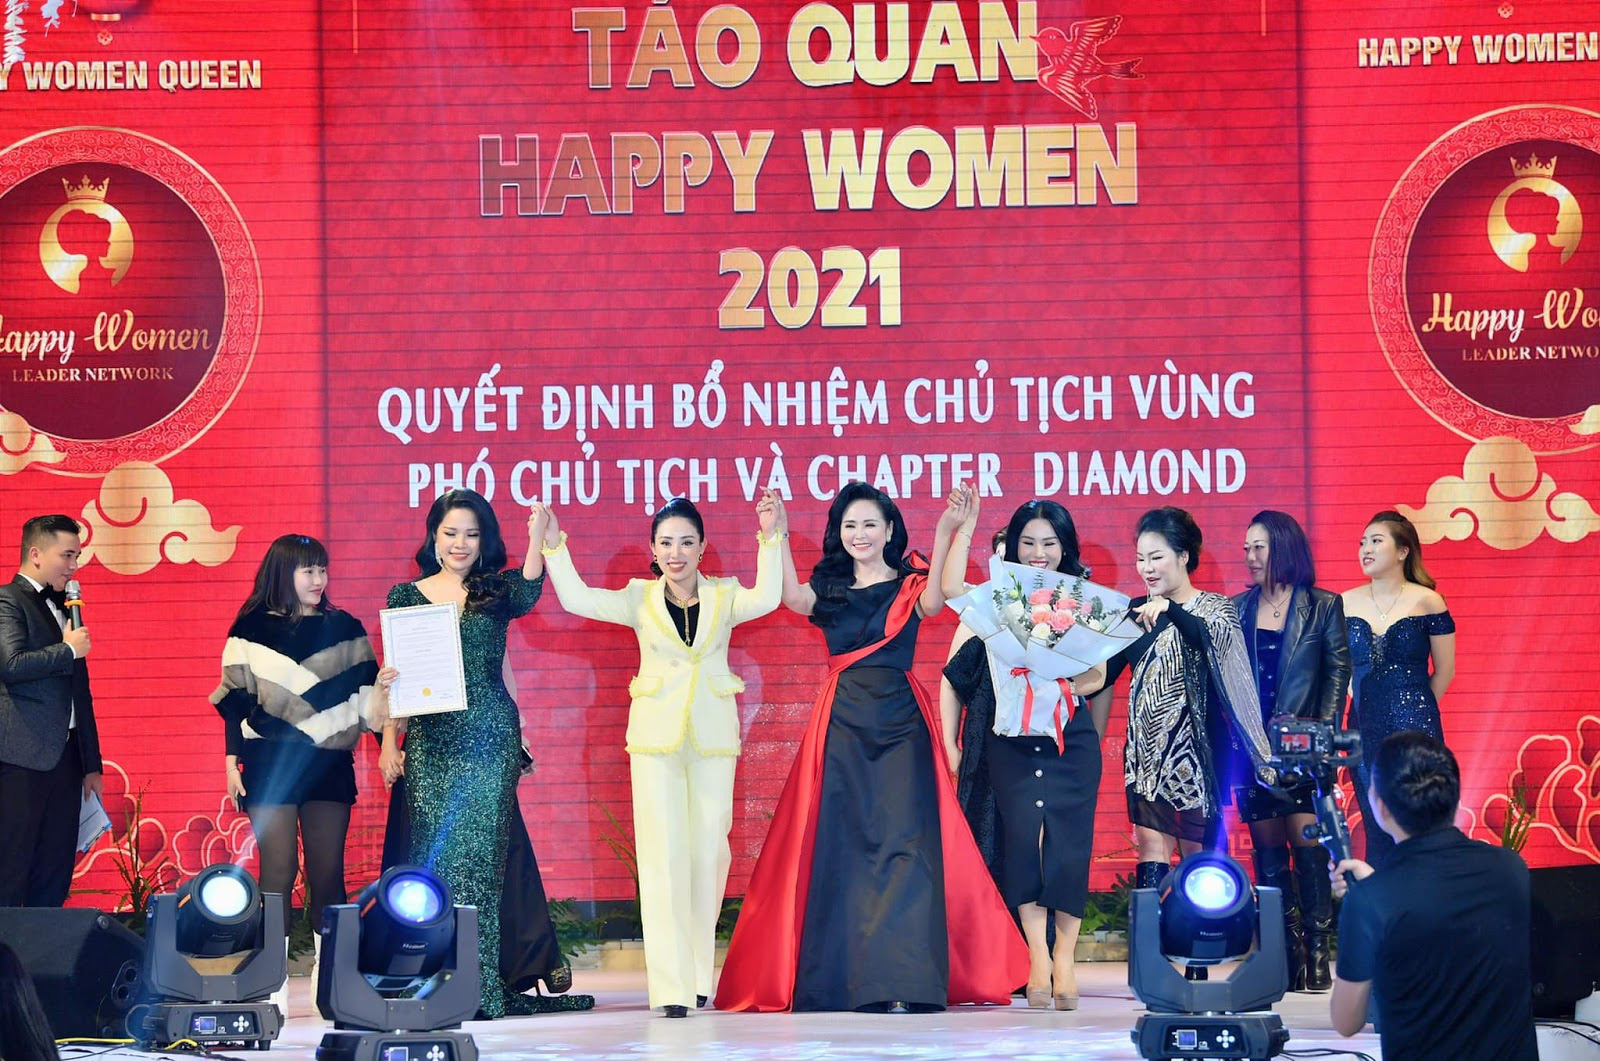 Chân dung Bùi Thanh Hương - Chủ tịch Happy Women - Trưởng ban tổ chức Táo quân 2021 - Ảnh 6.